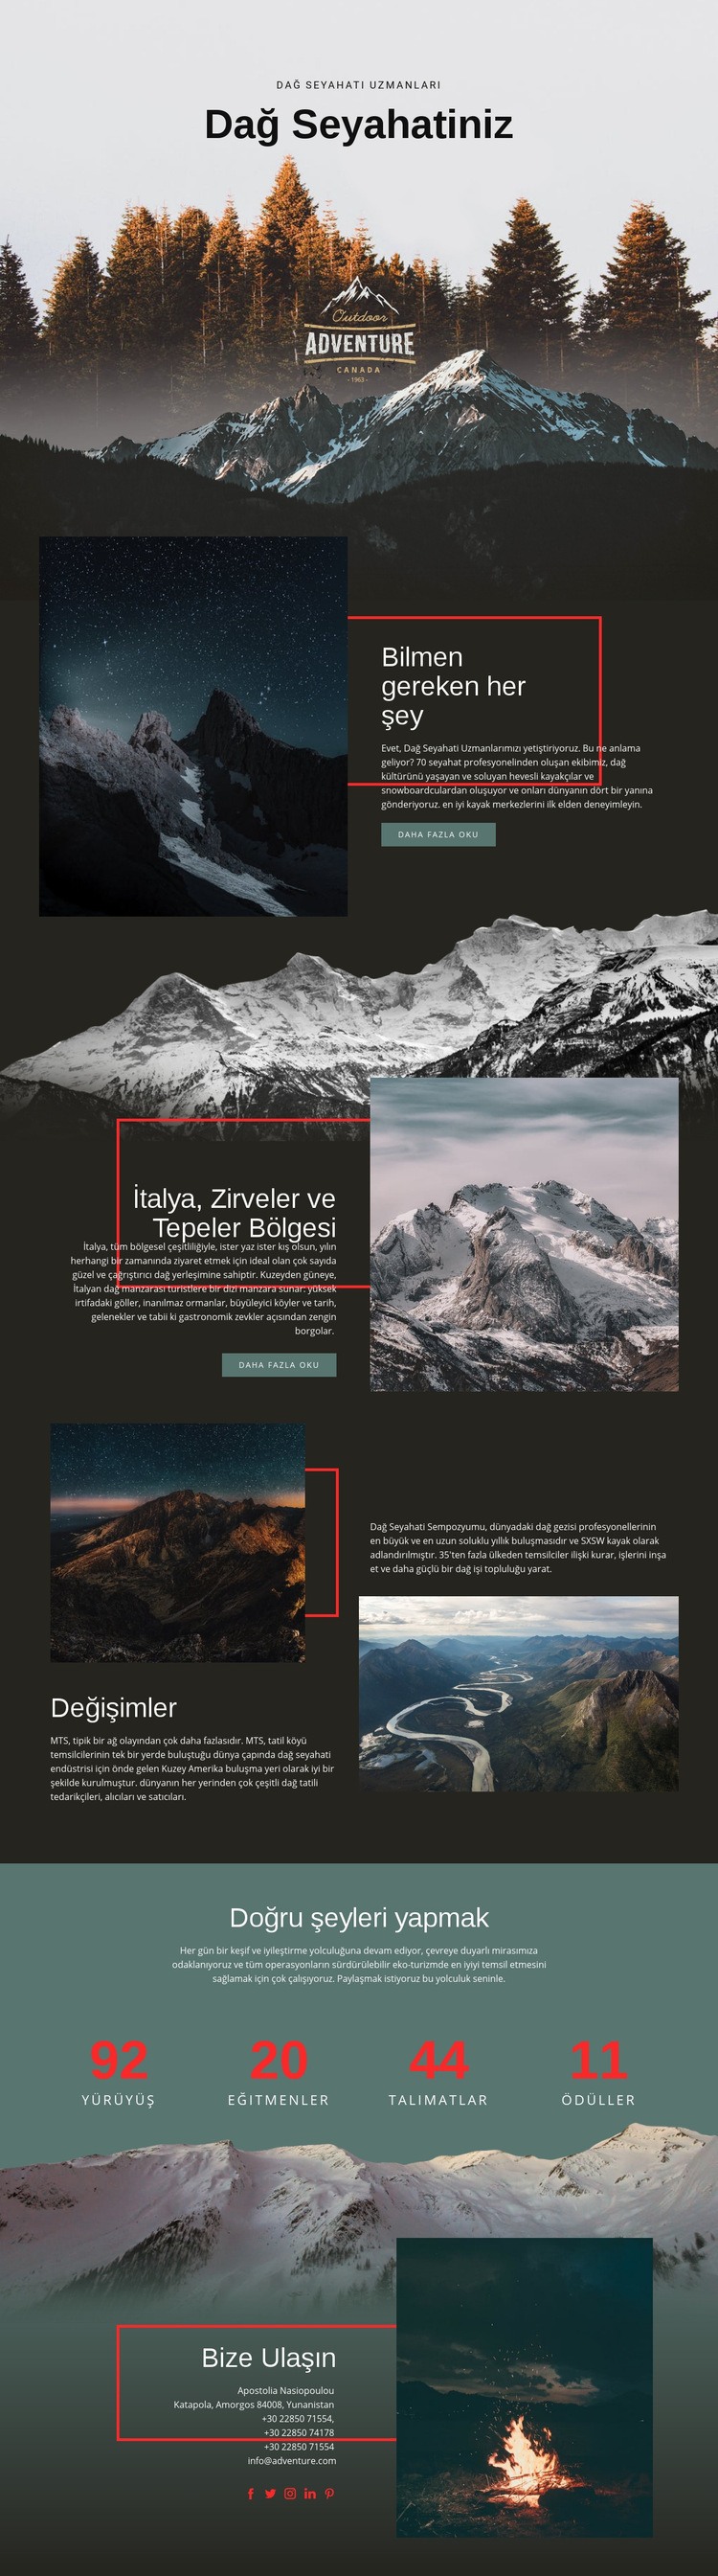 Dağ yolculuğu hakkında her şey Web sitesi tasarımı